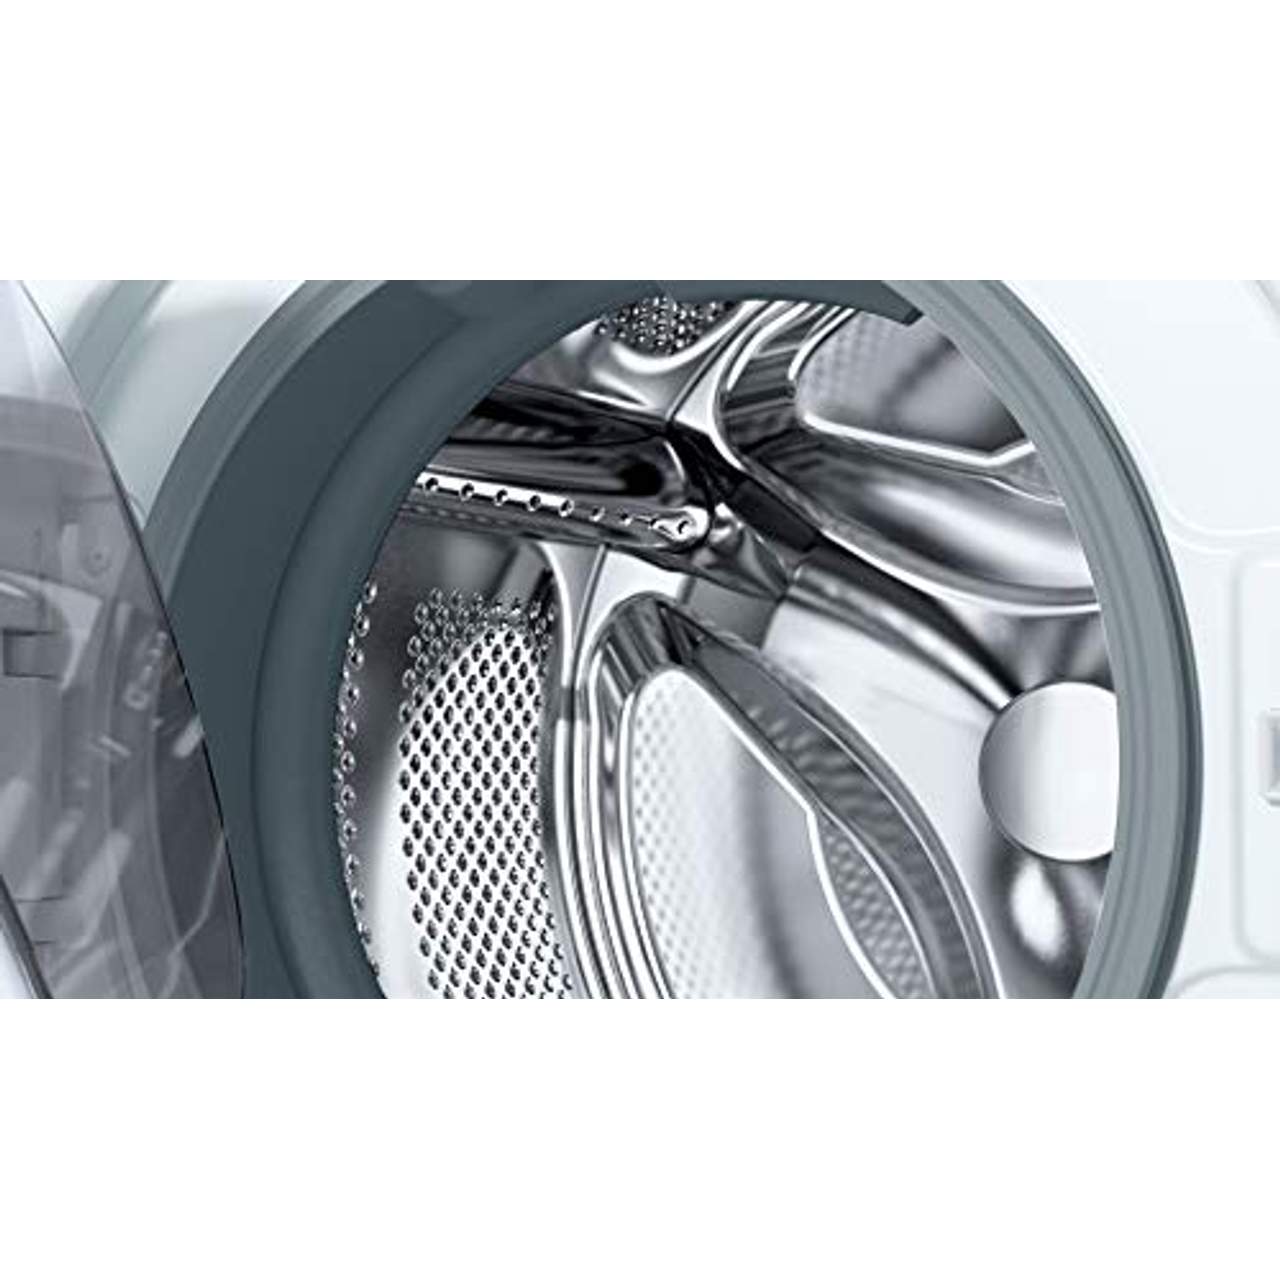 Bosch WAJ24060 Serie 2 Waschmaschine Frontlader